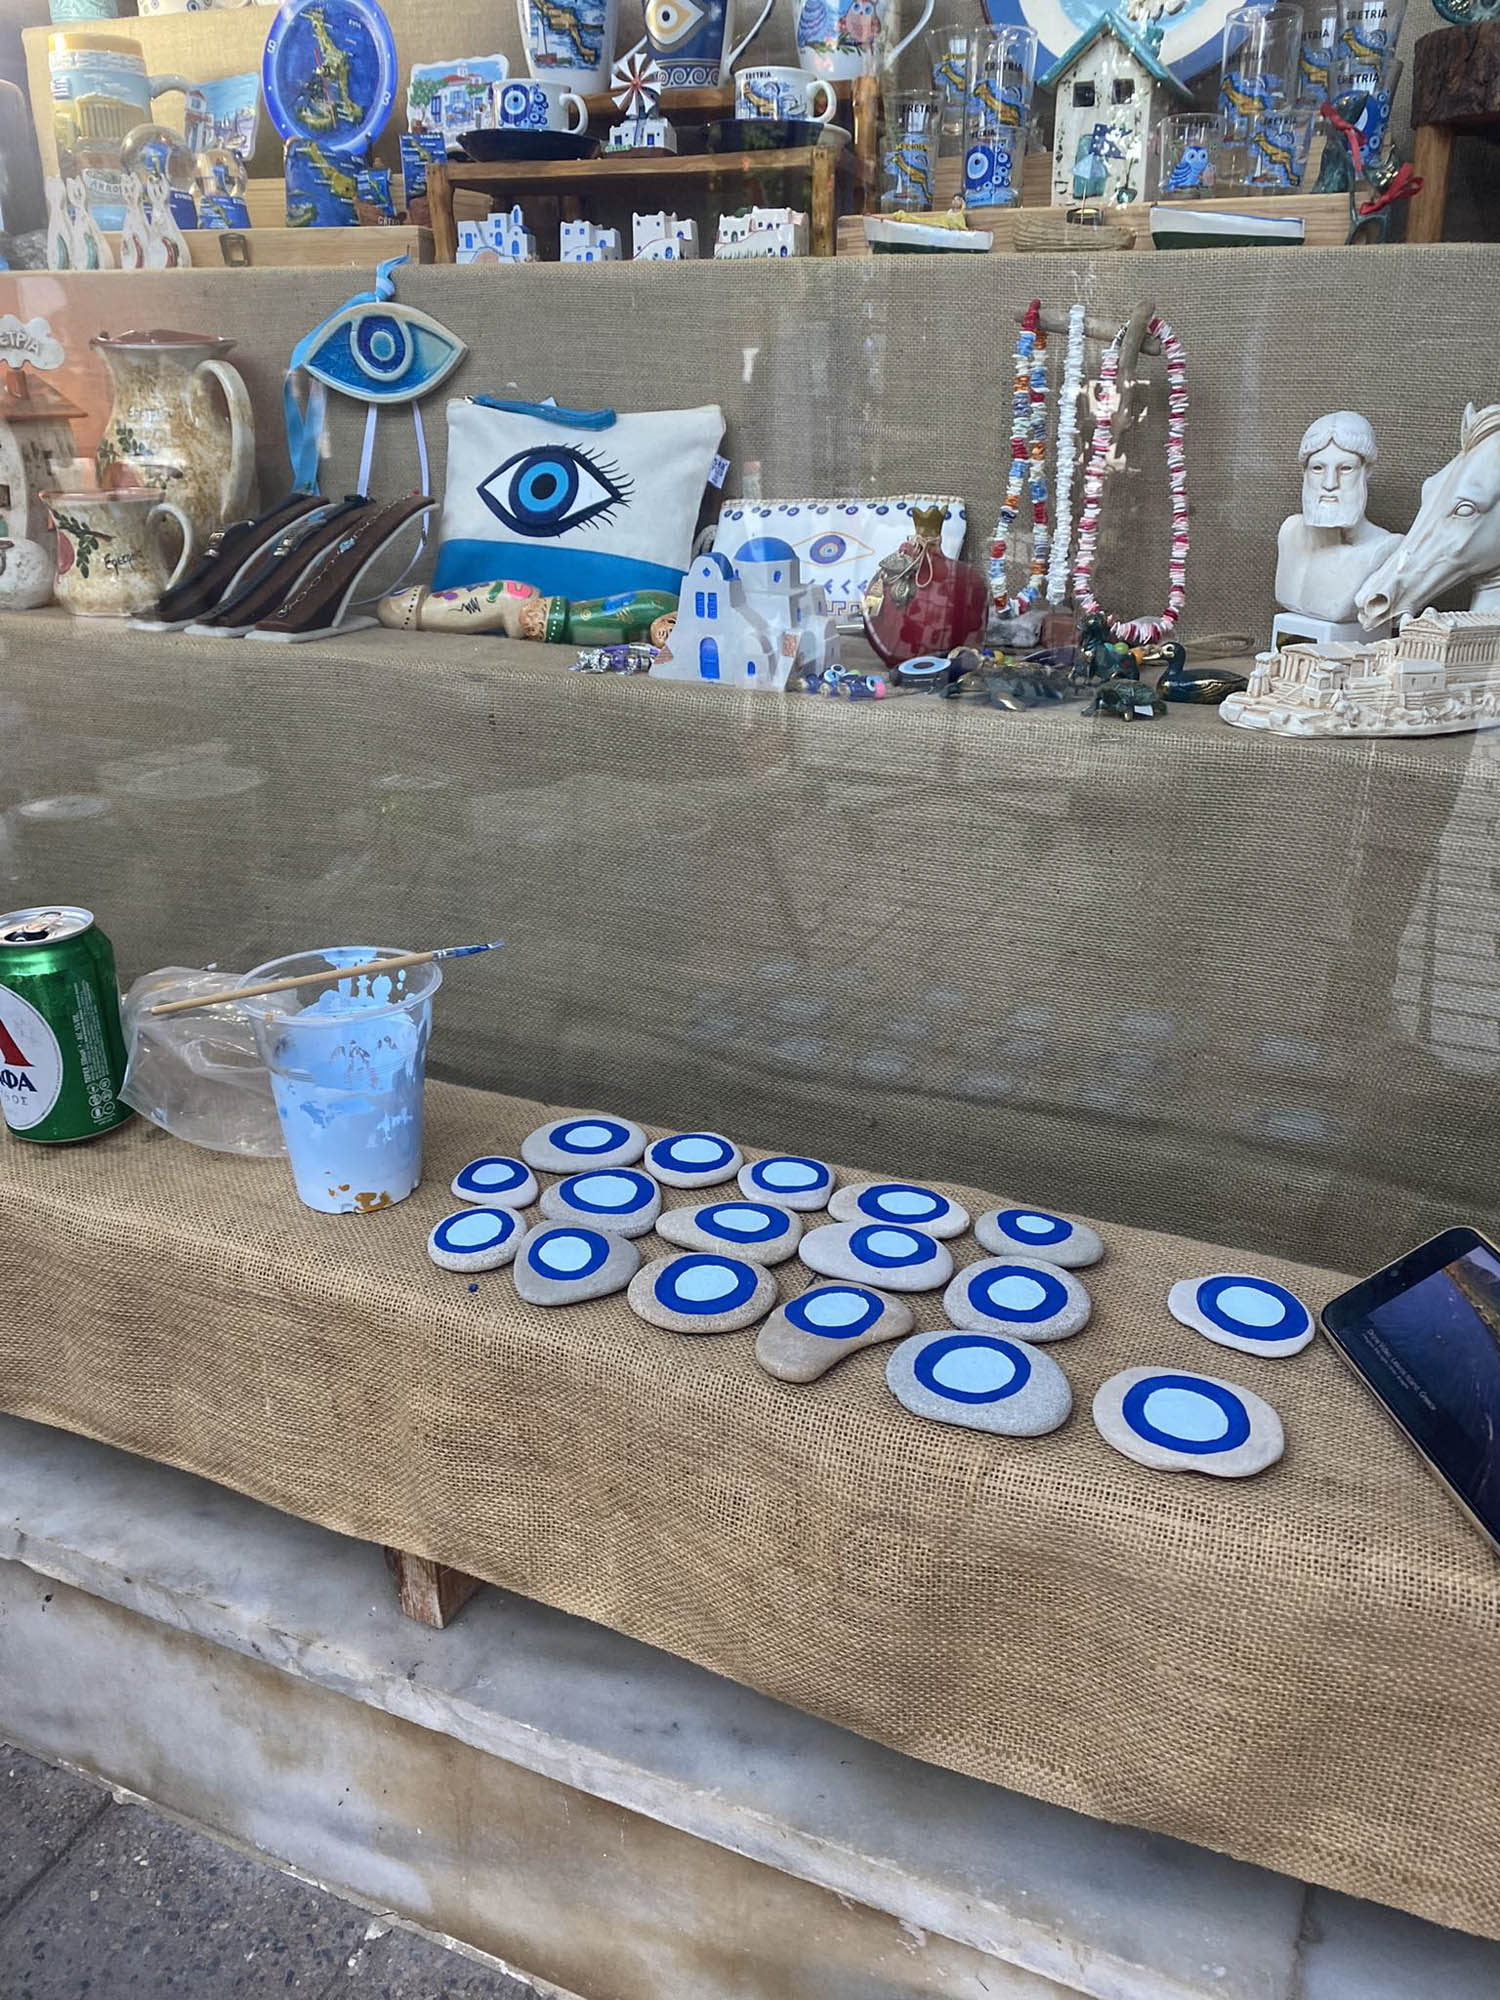 malowane kamienie - oko proroka, w sklepie z pamiątkami, wystawa sklepu z pamiątkami